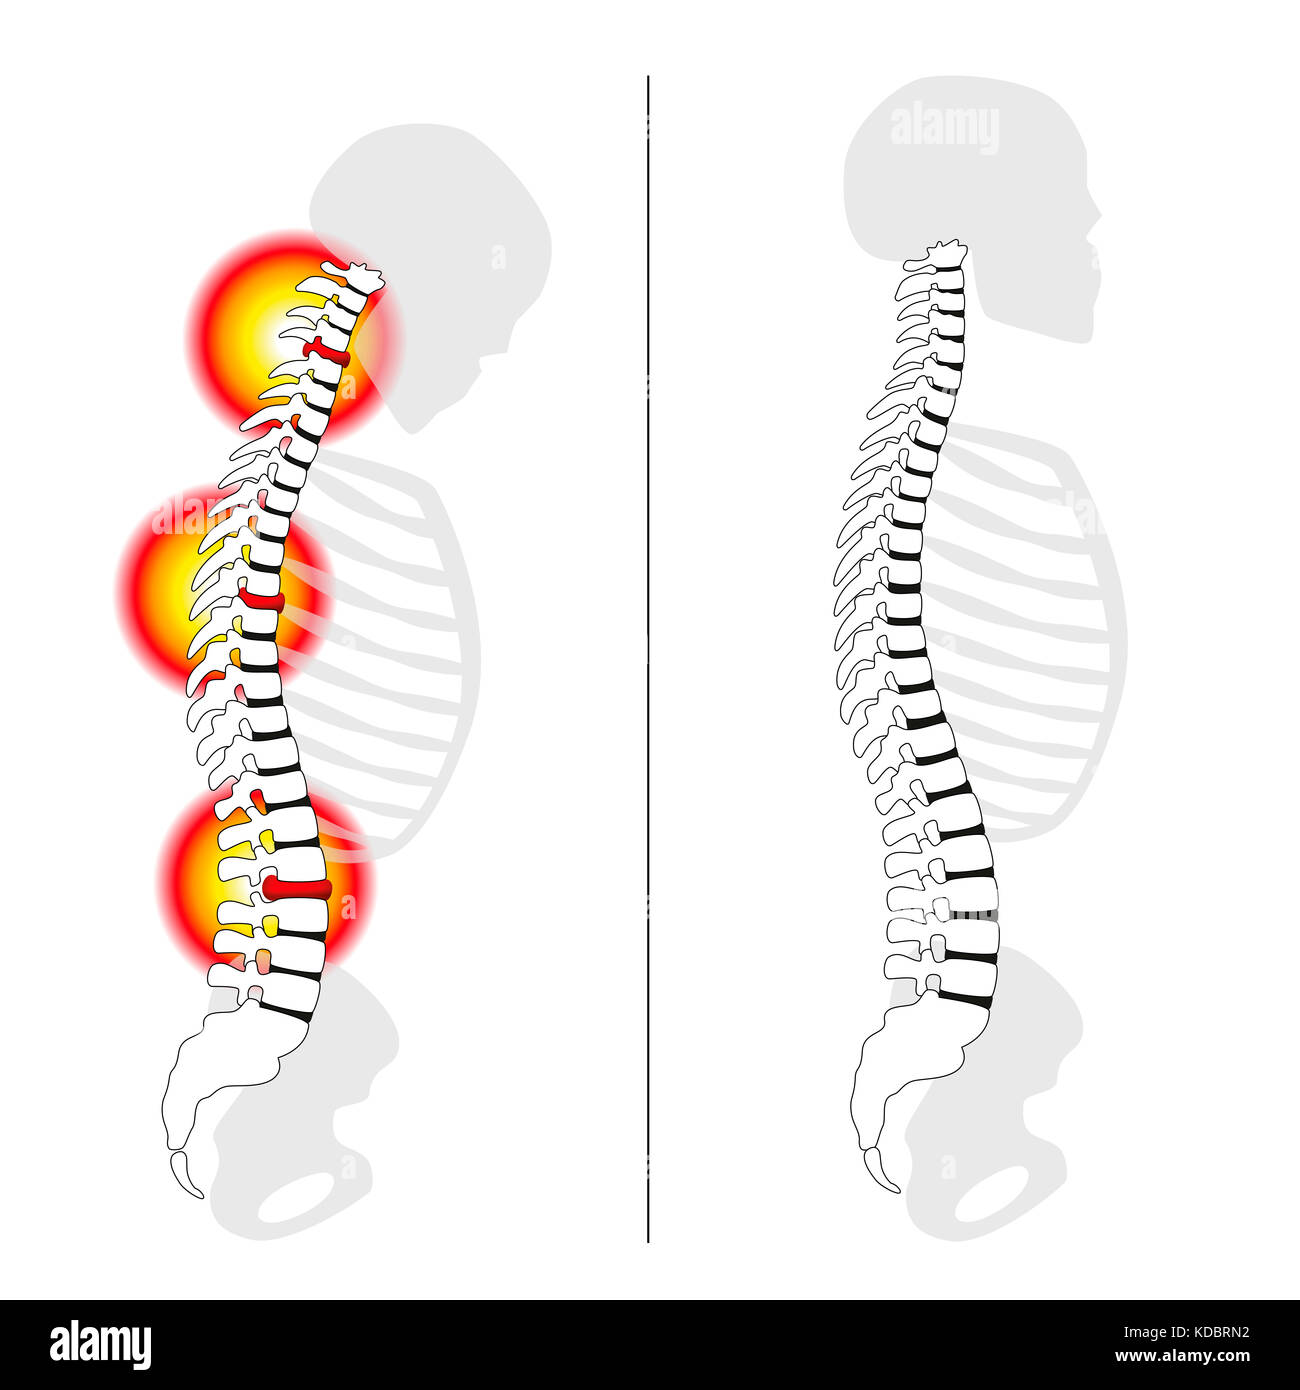 Bandscheibenvorfall Vorfälle, gekrümmten Rücken, starke Rückenschmerzen - Profil Ansichten der Wirbelsäule Bandscheibenvorfall versus aufrecht gesund zurück. Stockfoto